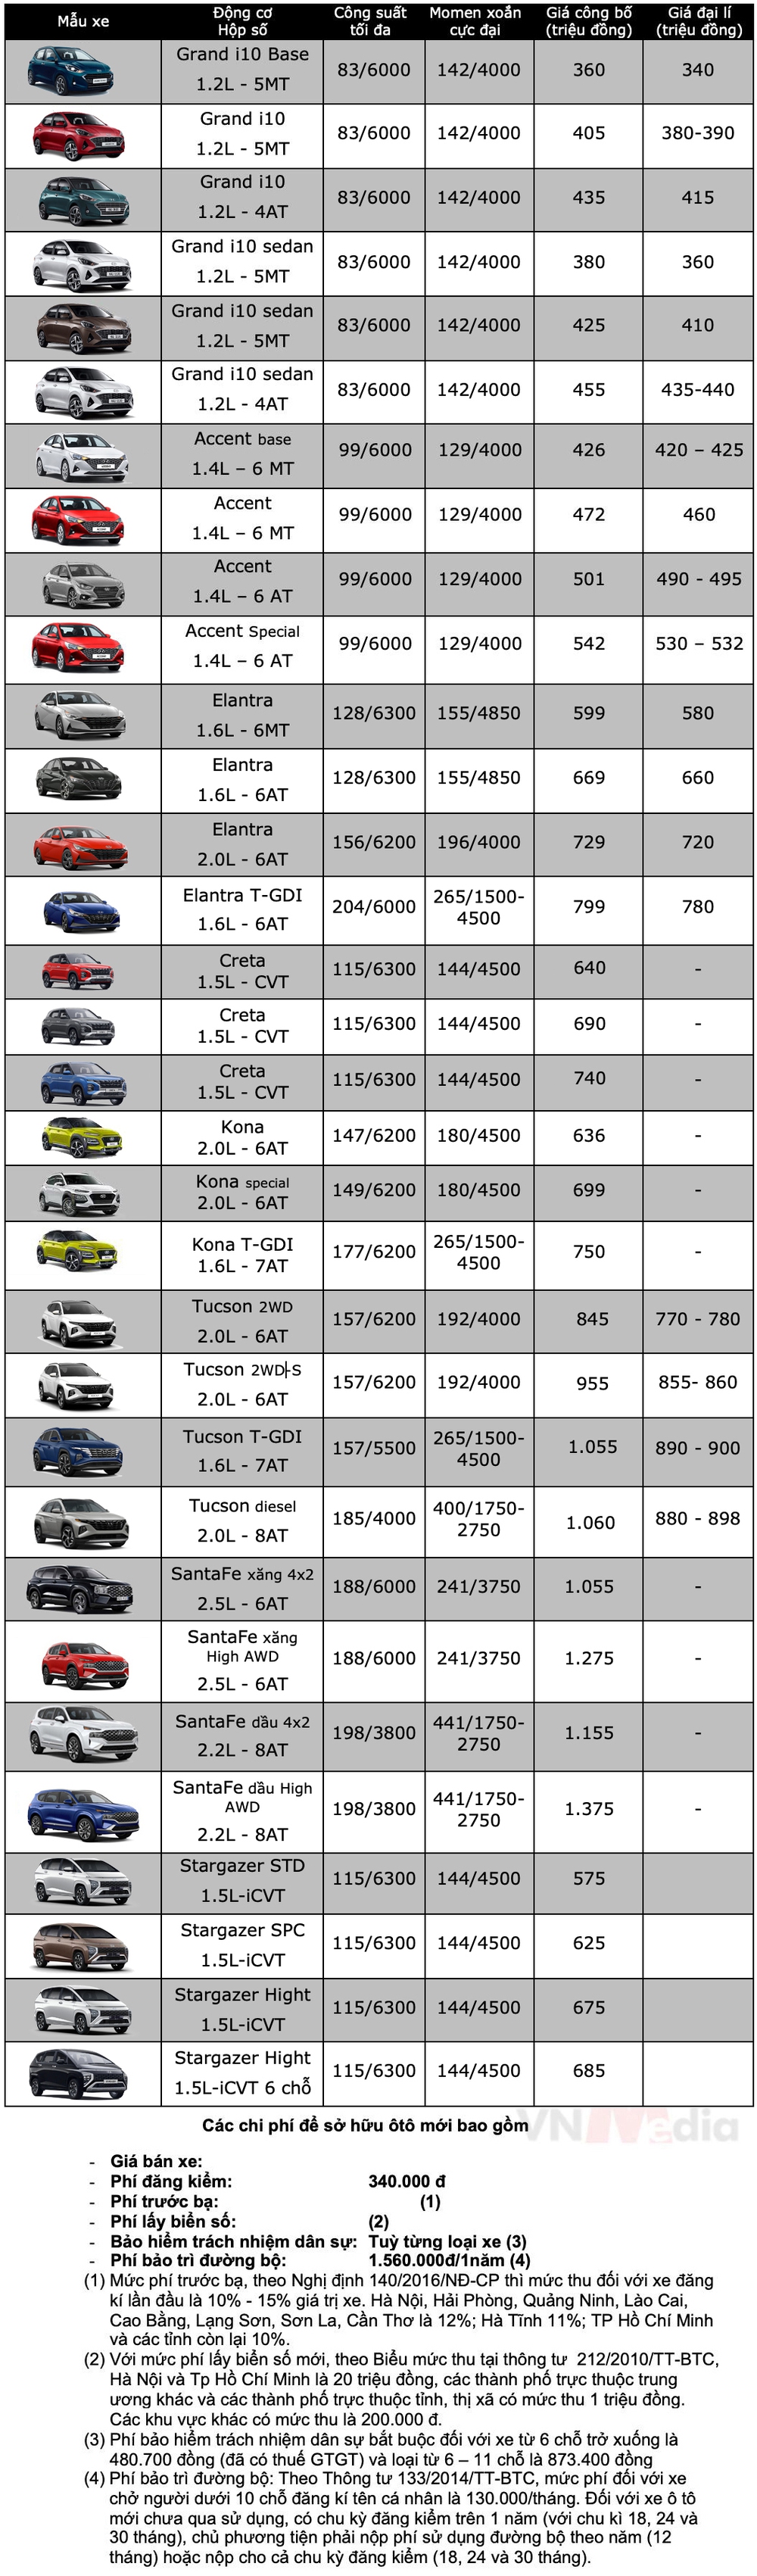 Bảng giá xe Hyundai tháng 4: Hyundai Creta tiếp tục được giảm giá tới 35 triệu đồng - Ảnh 2.